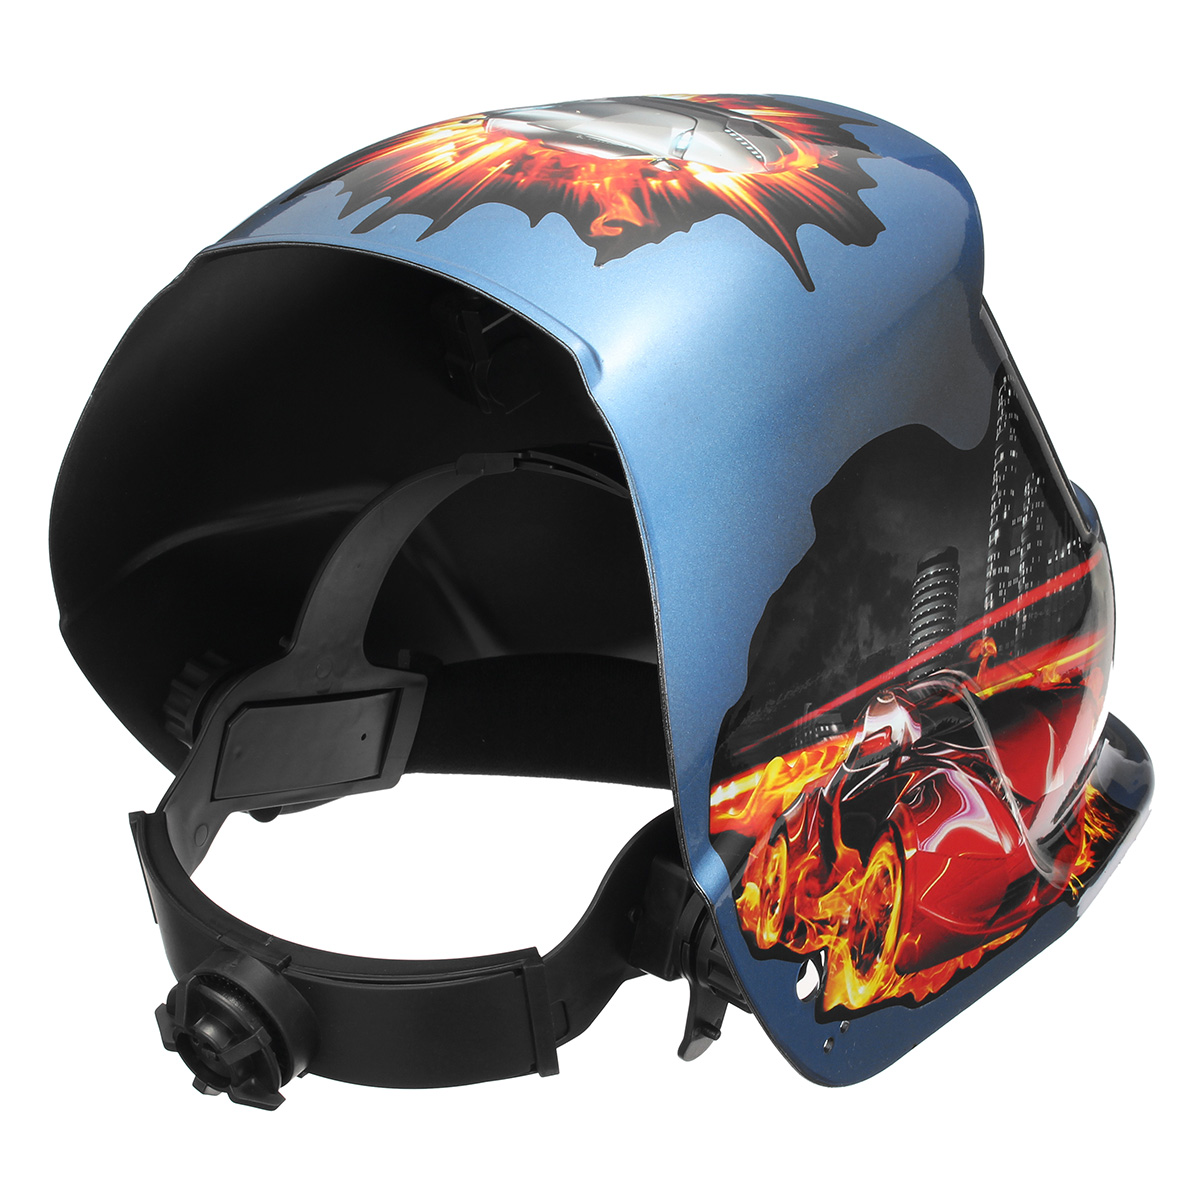 Fire-Pro-Solar-Auto-Welding-Darkening-Helmet-Arc-Tig-mig-Grinding-Welders-Mask-1326755-4